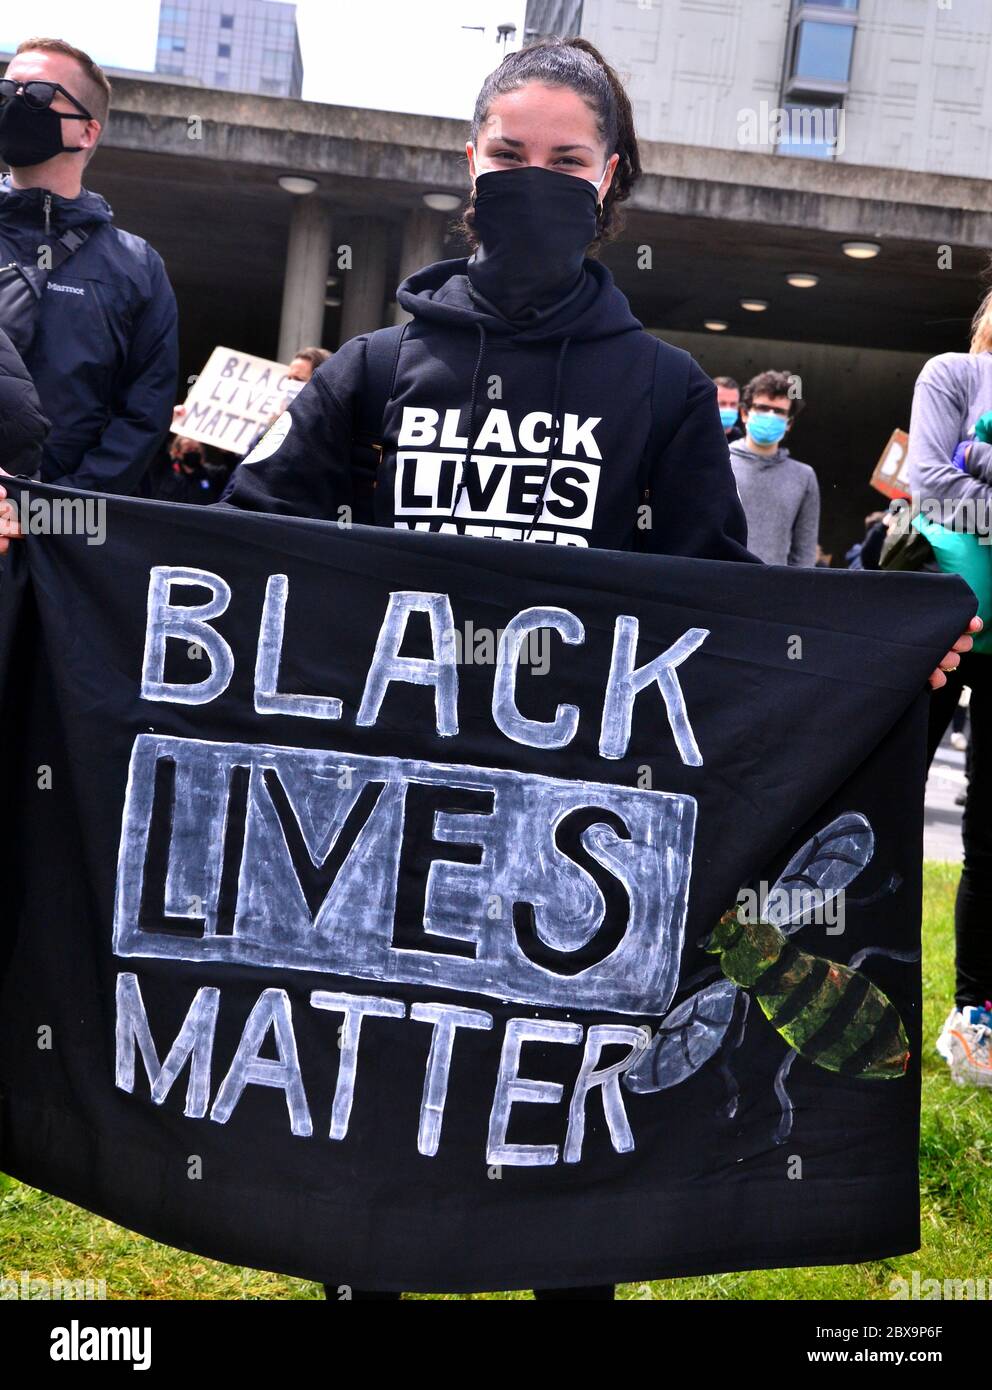 Une manifestation Black Lives Matter dans le centre de Manchester, Angleterre, Royaume-Uni, le 6 juin 2020, a assisté de milliers de manifestants, en solidarité avec les manifestants aux États-Unis au sujet de la mort de George Floyd. Floyd, un homme afro-américain, est décédé à Minneapolis, Minnesota, États-Unis, le 25 mai 2020, alors qu'il était arrêté par 4 policiers après qu'un assistant de magasin ait prétendu avoir essayé de payer avec une fausse facture de 20 $. Banque D'Images